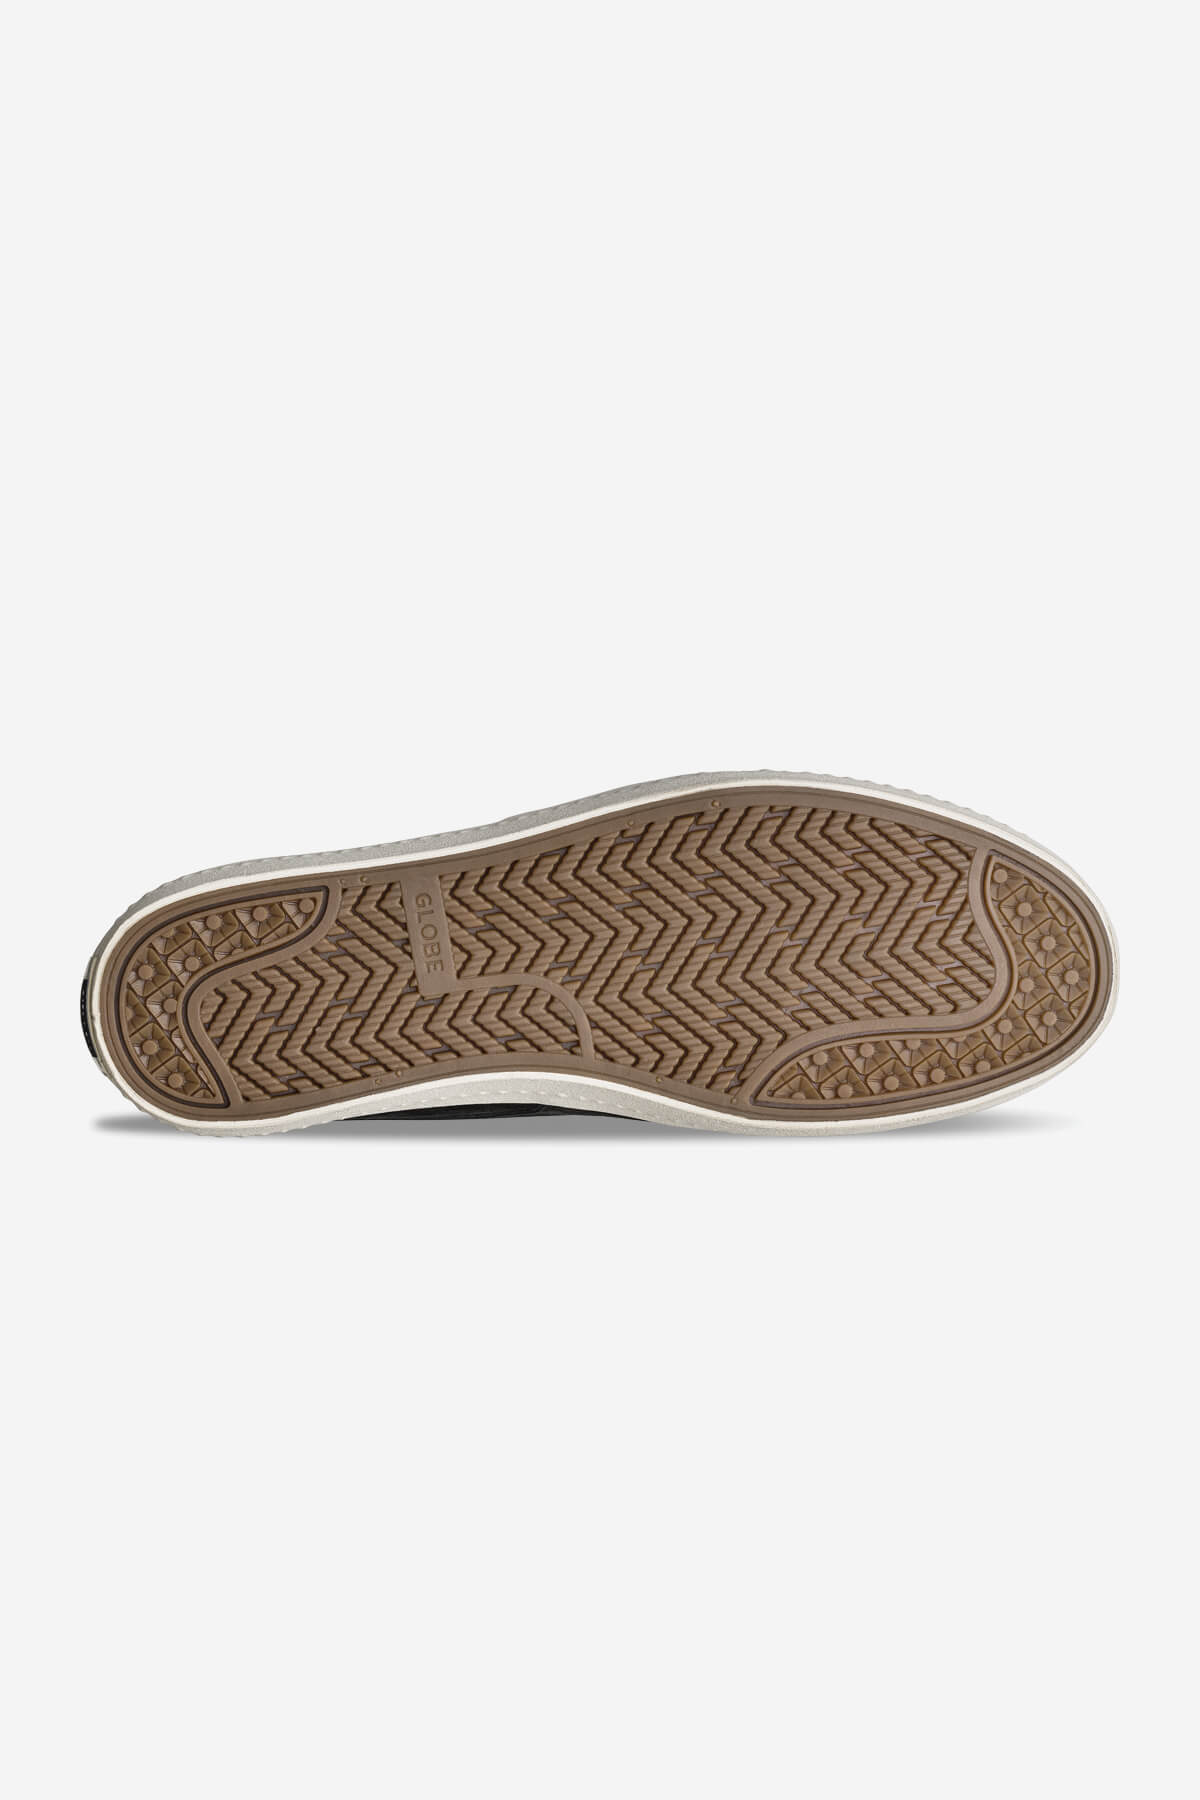 liaizon nero antico white skateboard  scarpe